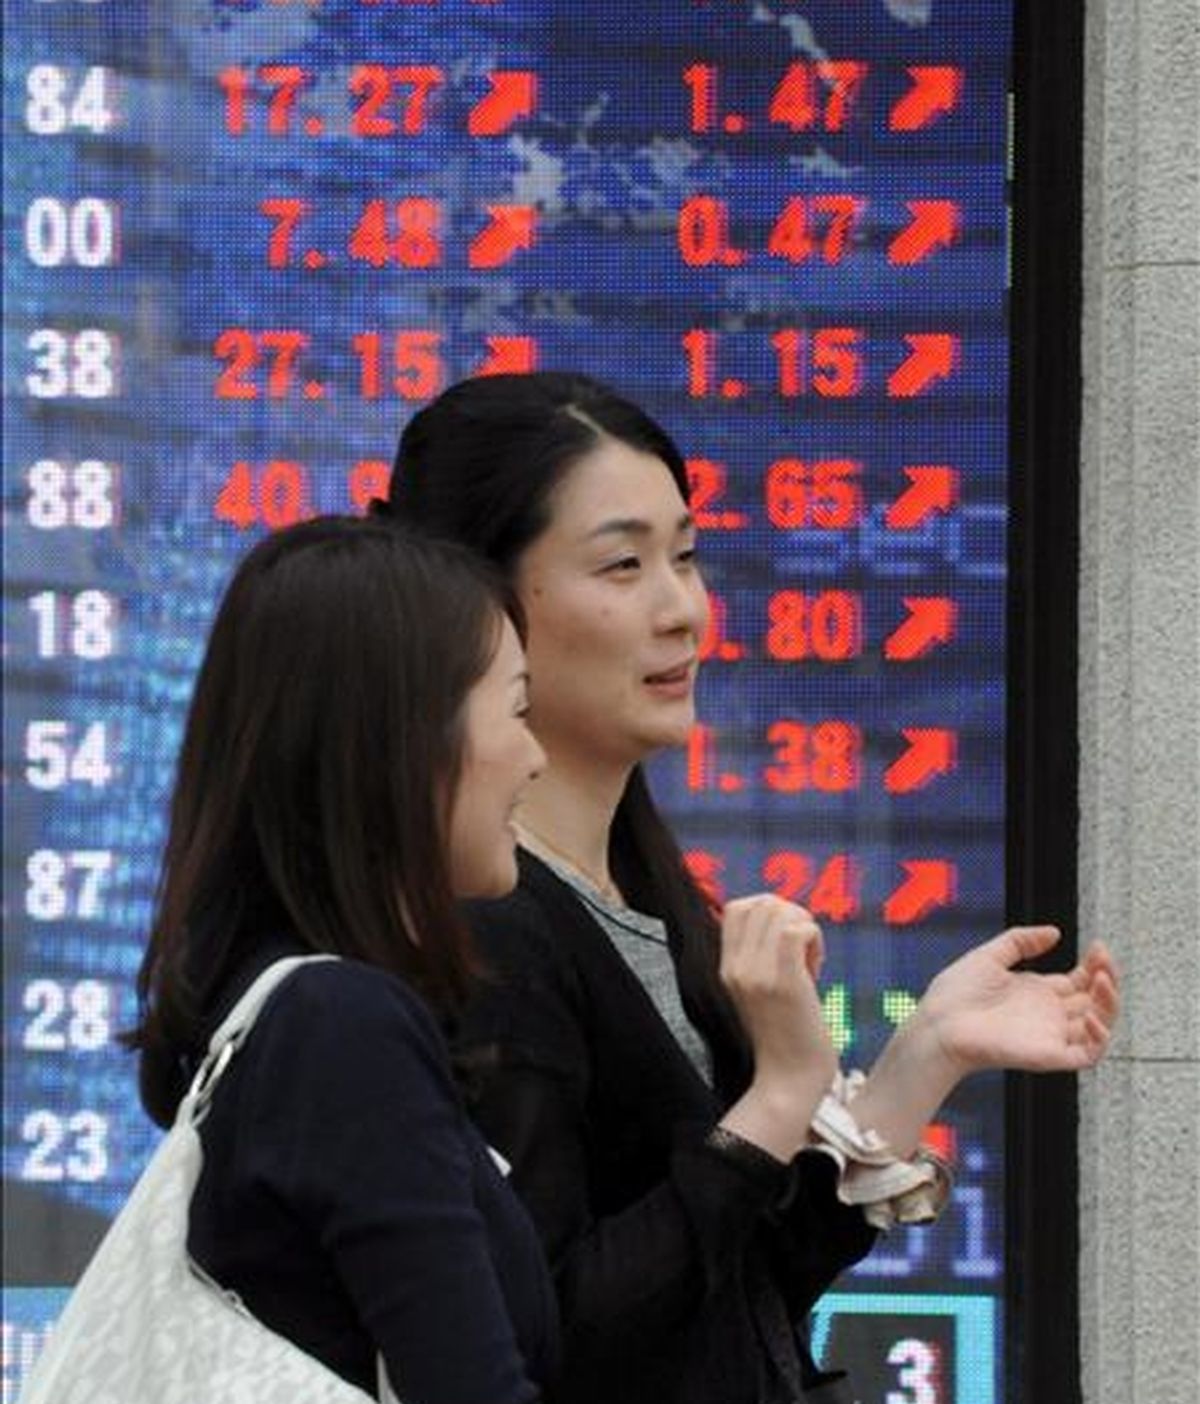 Dos jóvenes pasan una pantalla electrónico con el valor del índice Nikkei, en el centro de Tokio. EFE/Archivo